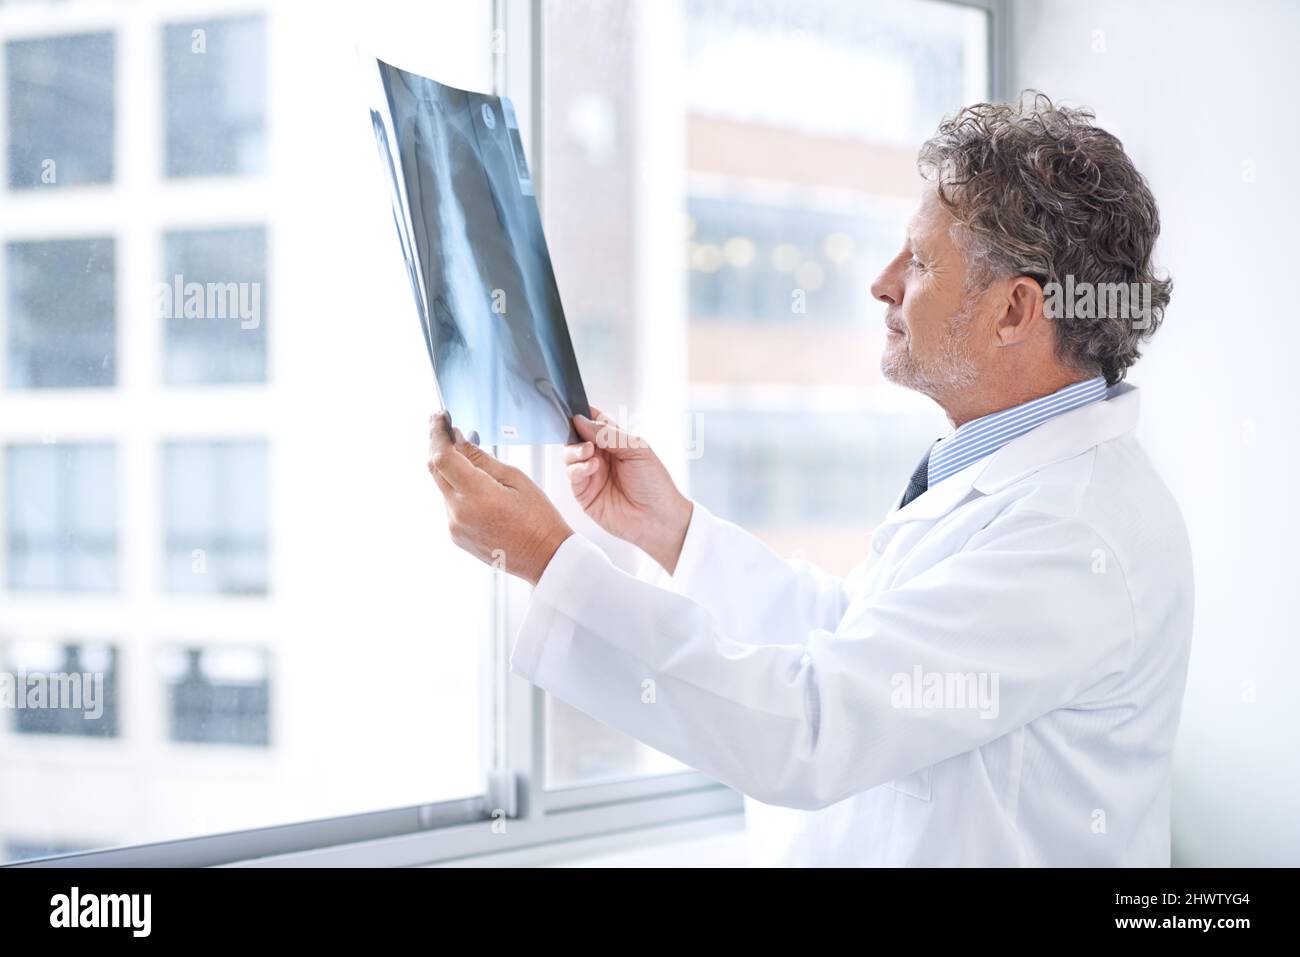 HES ha ottenuto le informazioni interne alla vostra salute. Shot di un medico maturo che esamina una radiografia nel suo ufficio. Foto Stock